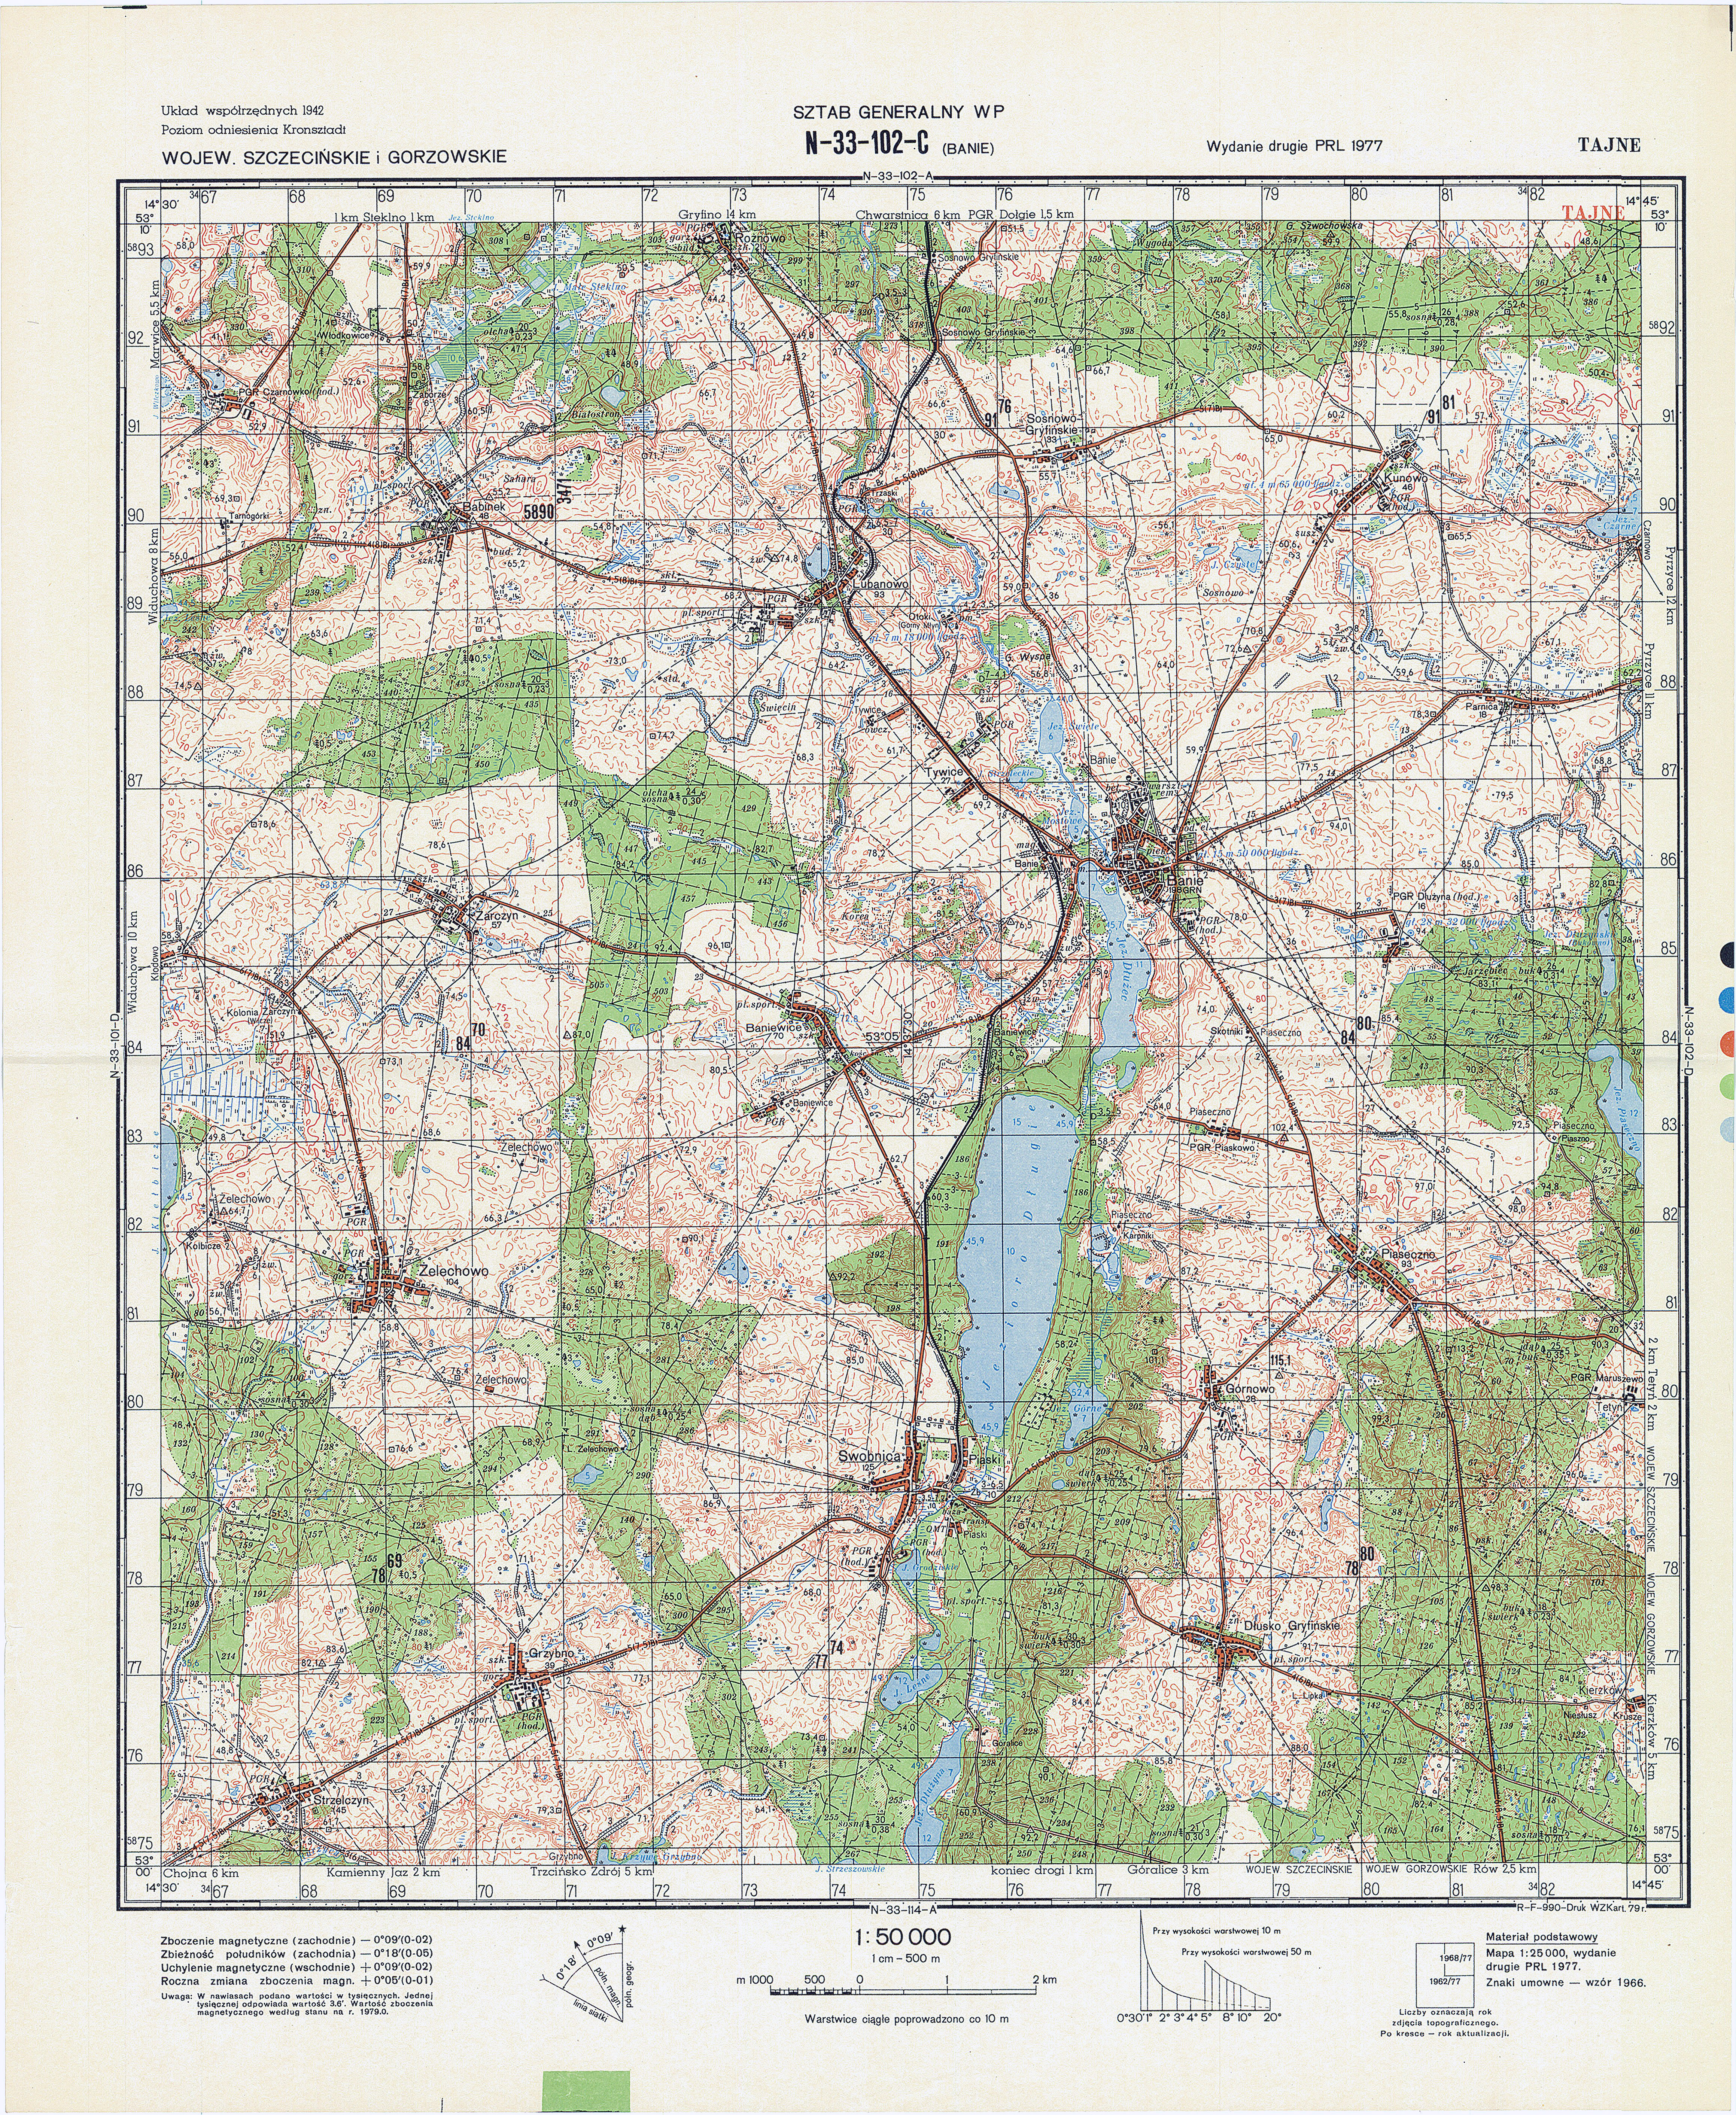 Mapy topograficzne LWP 1_50 000 - N-33-102-C_BANIE_1979.jpg